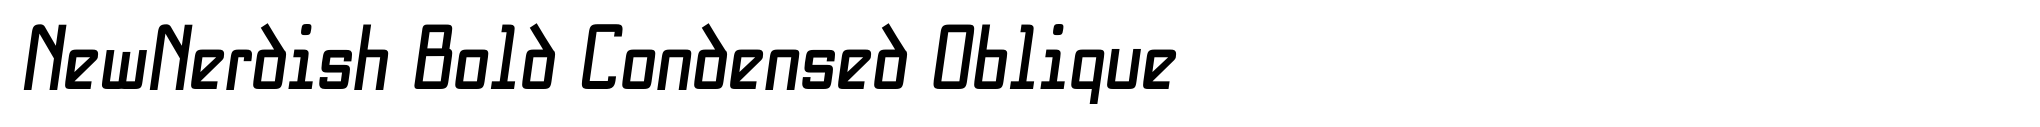 NewNerdish Bold Condensed Oblique image